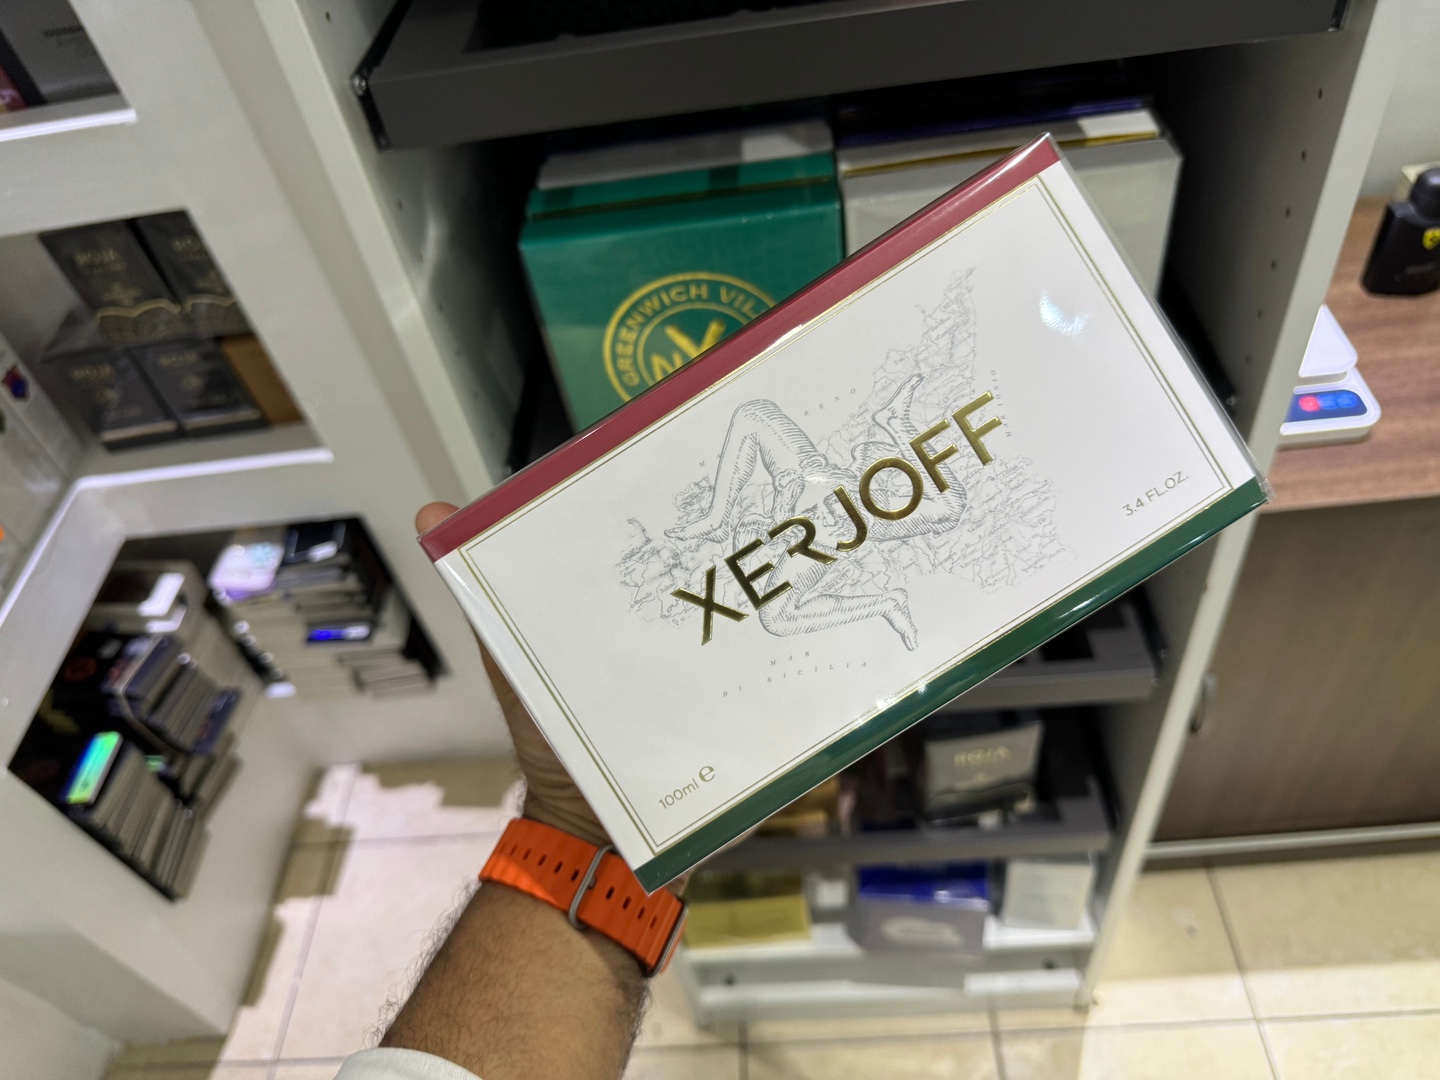 joyas, relojes y accesorios - Perfume Xerjoff Naxos 100ml Nuevos, Originales, $ 19,500 NEG 0